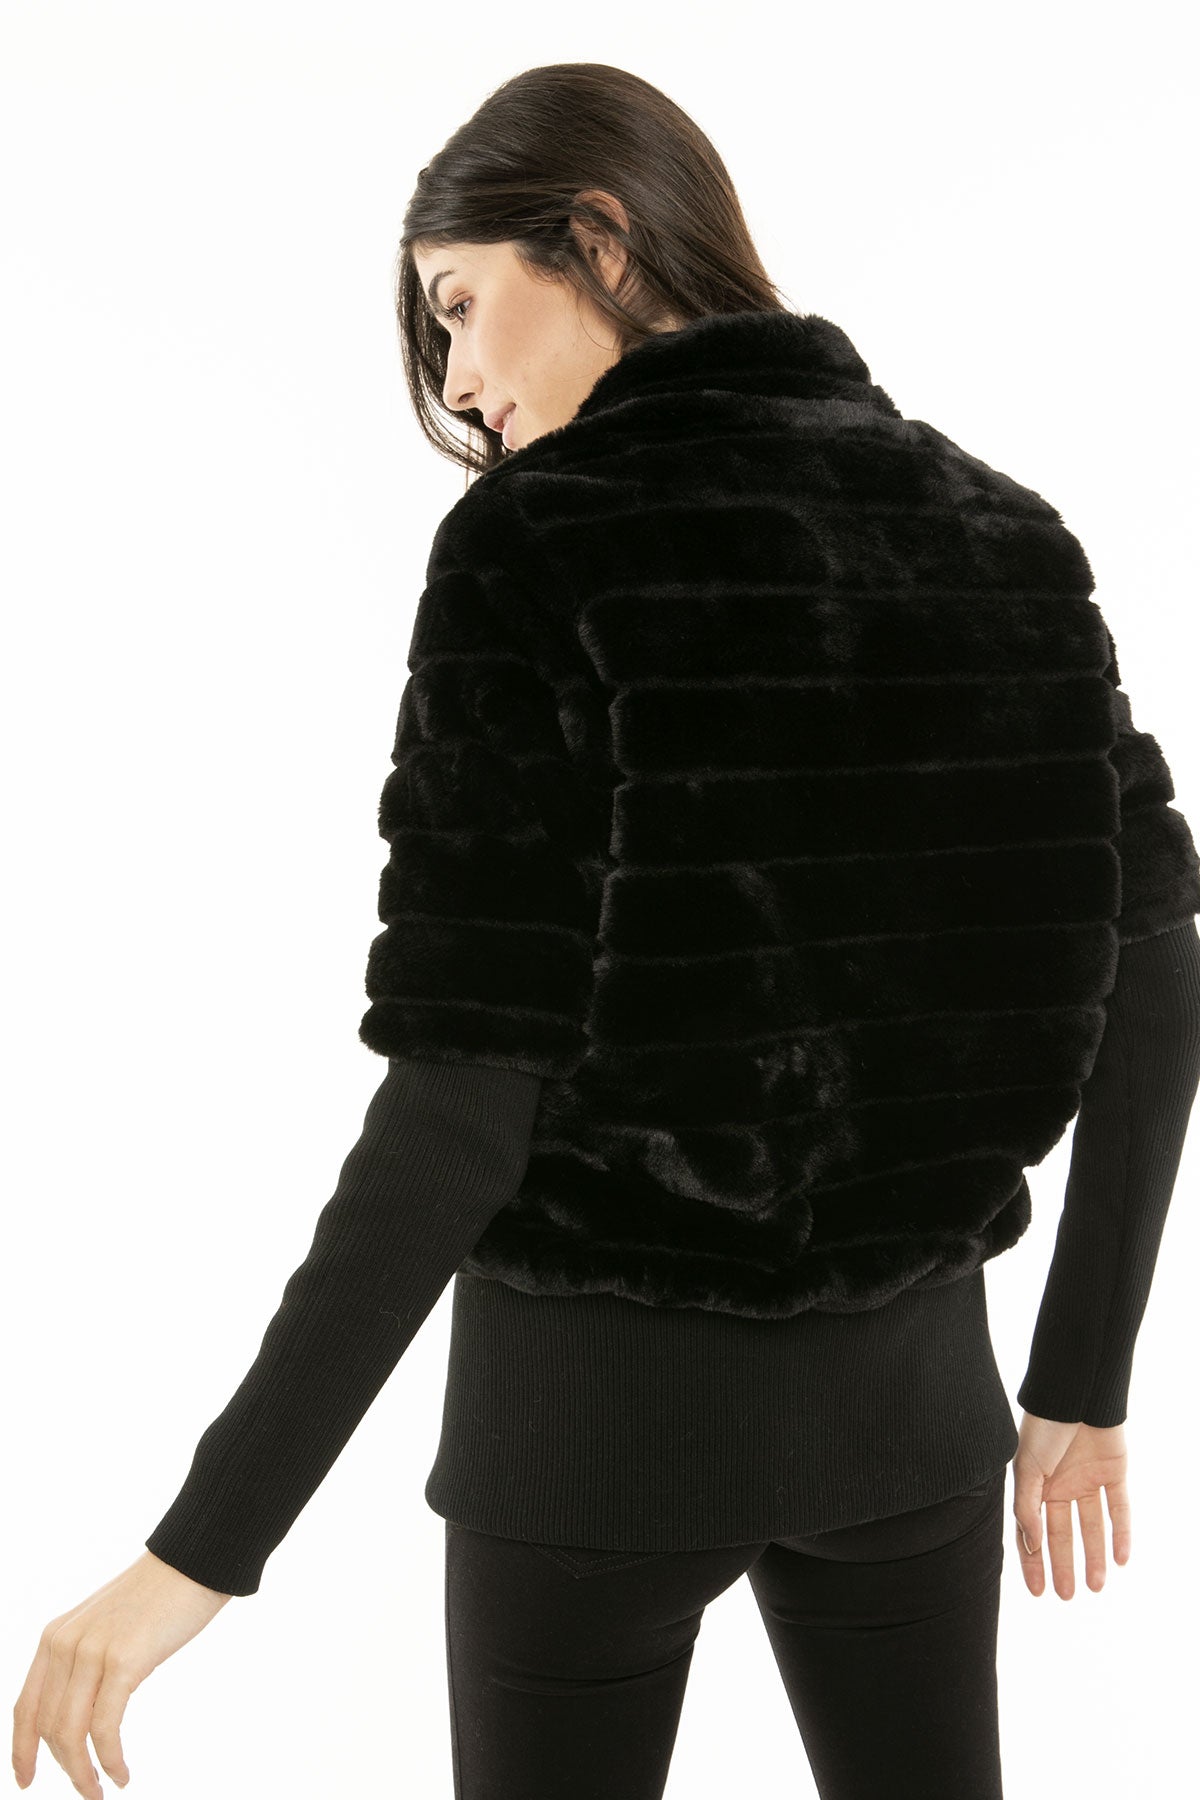 Rene Derhy Ceket-Libas Trendy Fashion Store